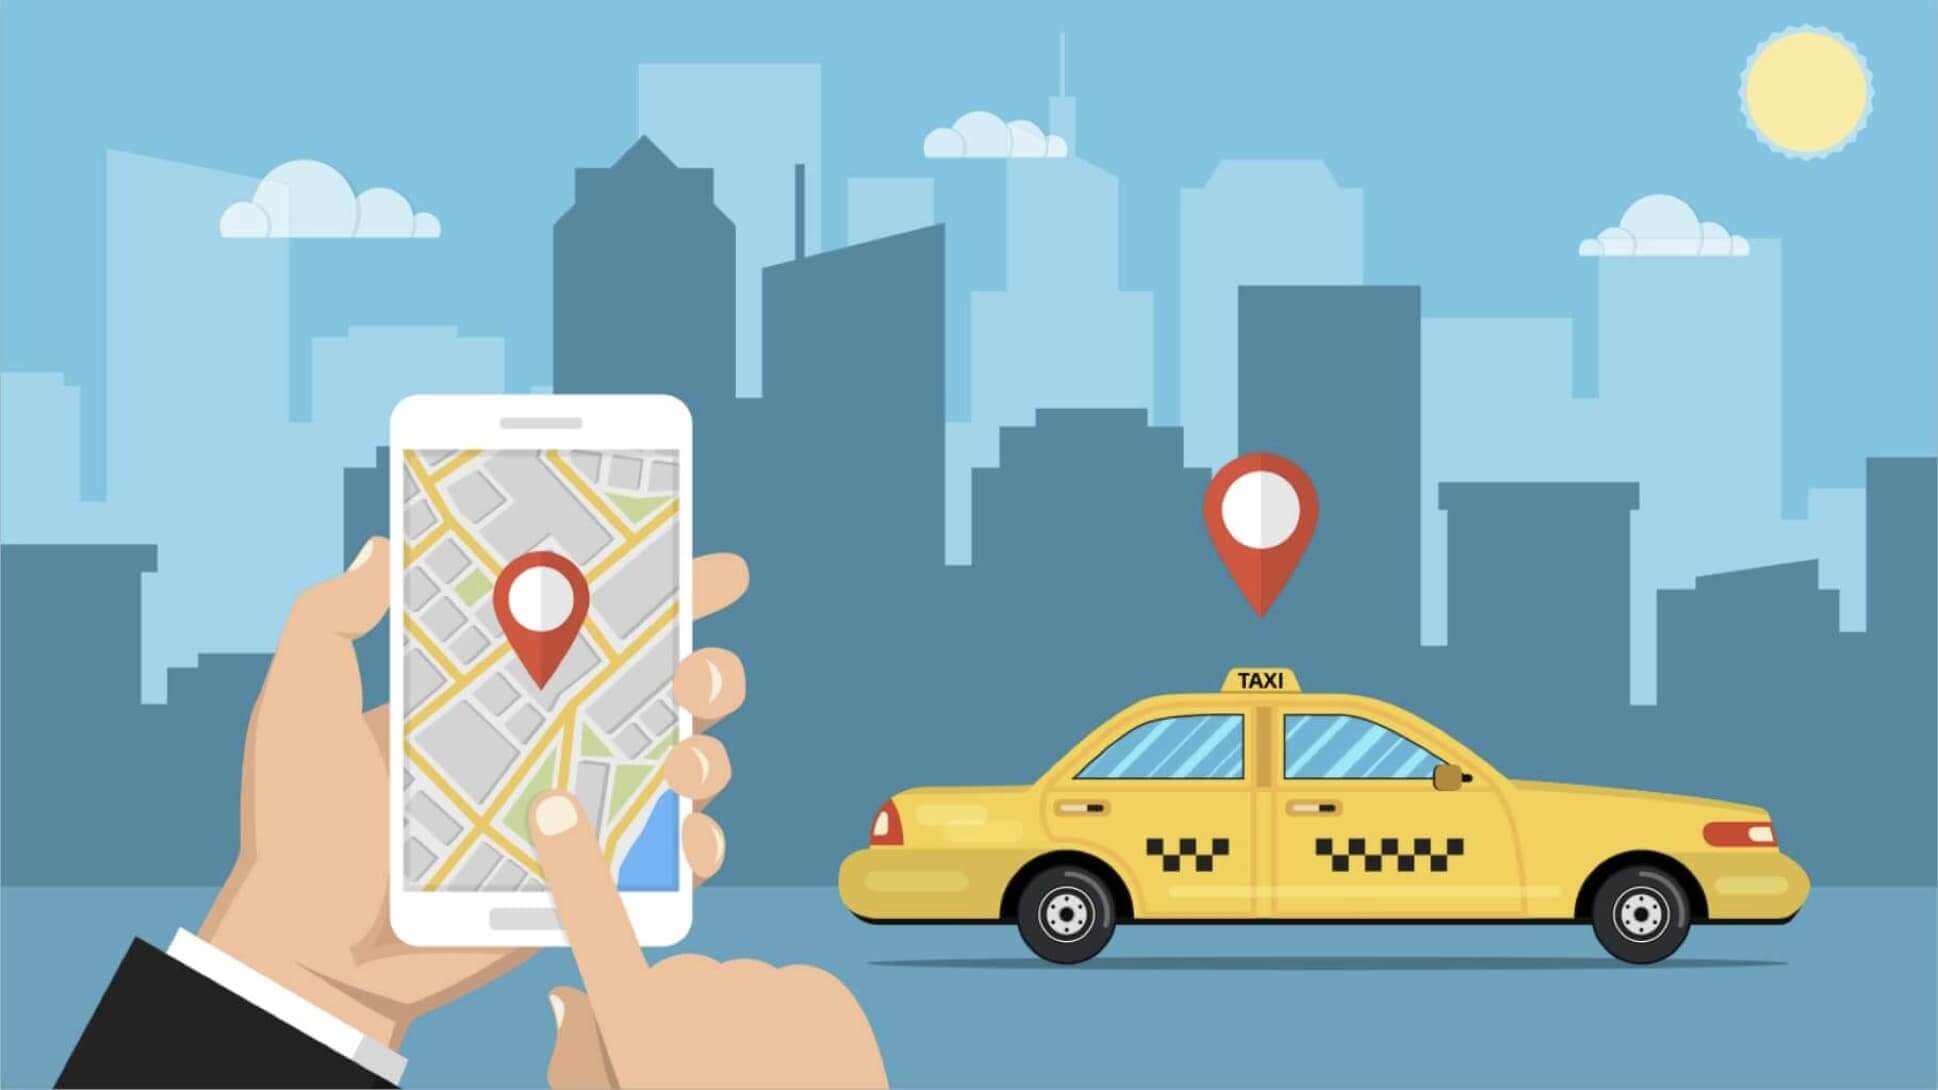 盛岡で使えるタクシーアプリとクーポン情報